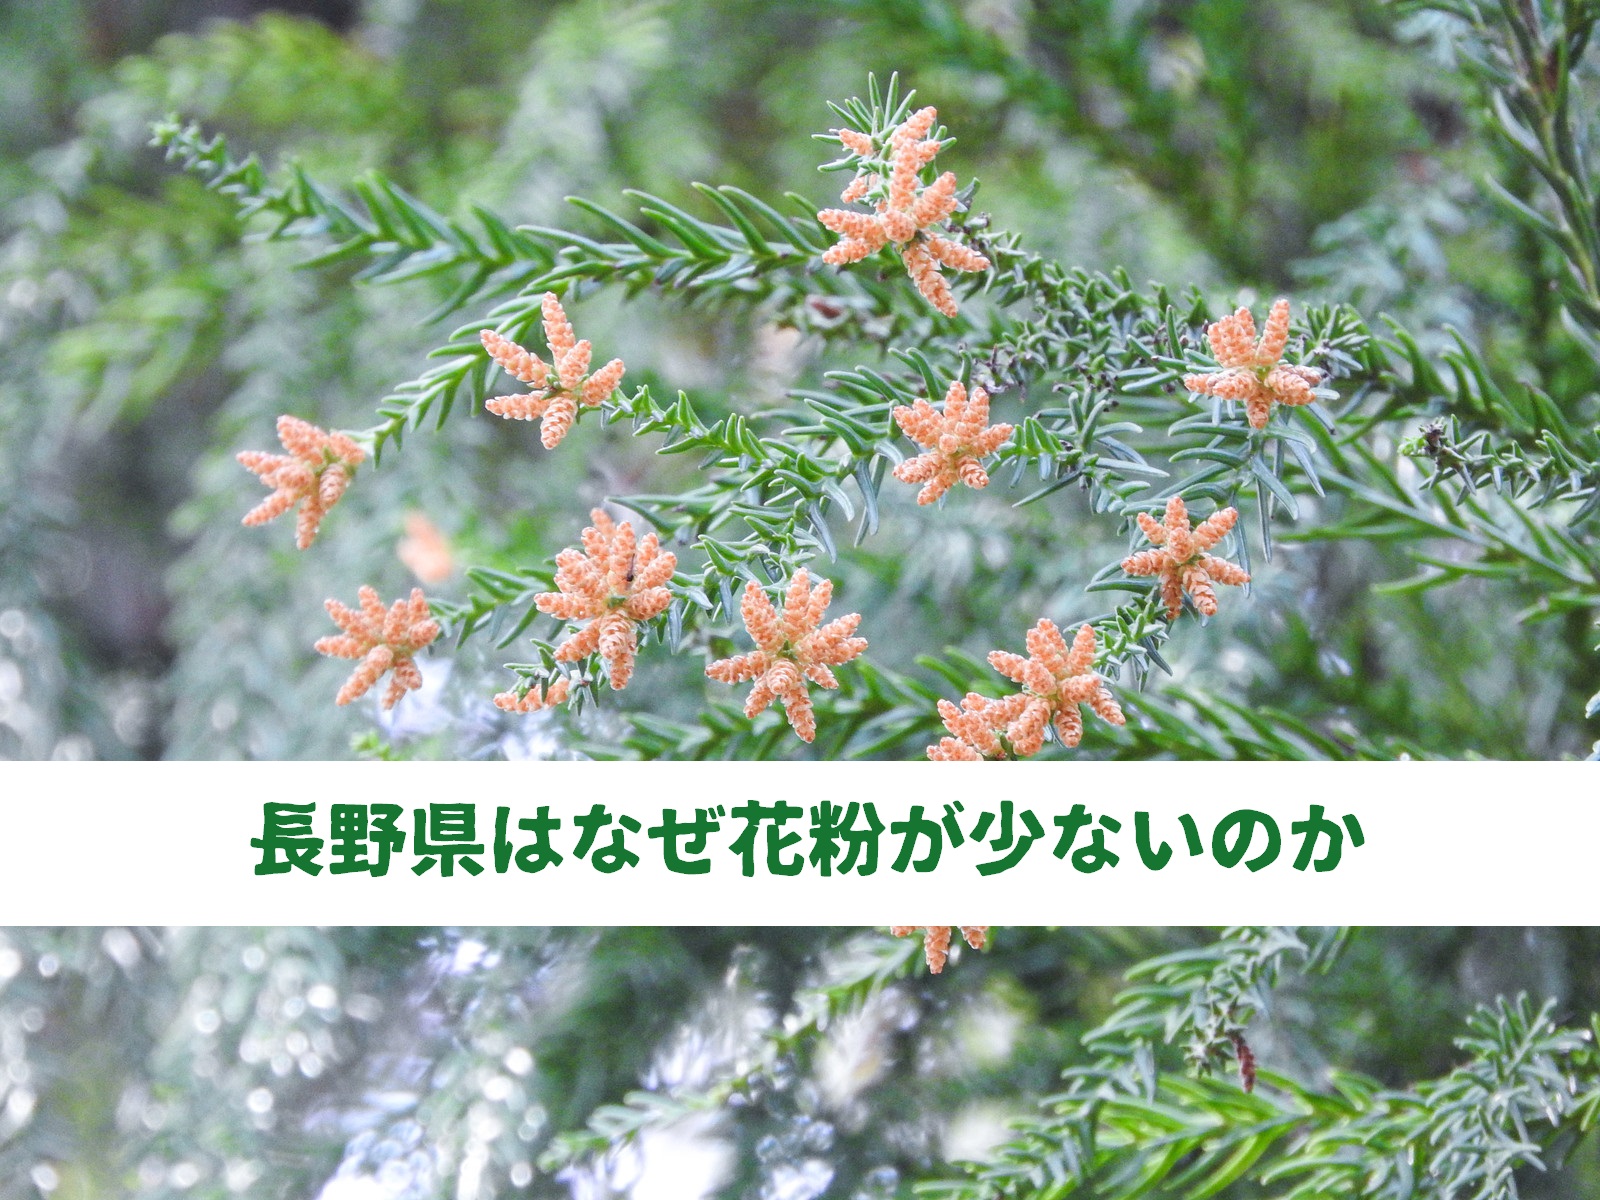 長野県はなぜ花粉が少ないのか。理由はぜんぶで3つあります。